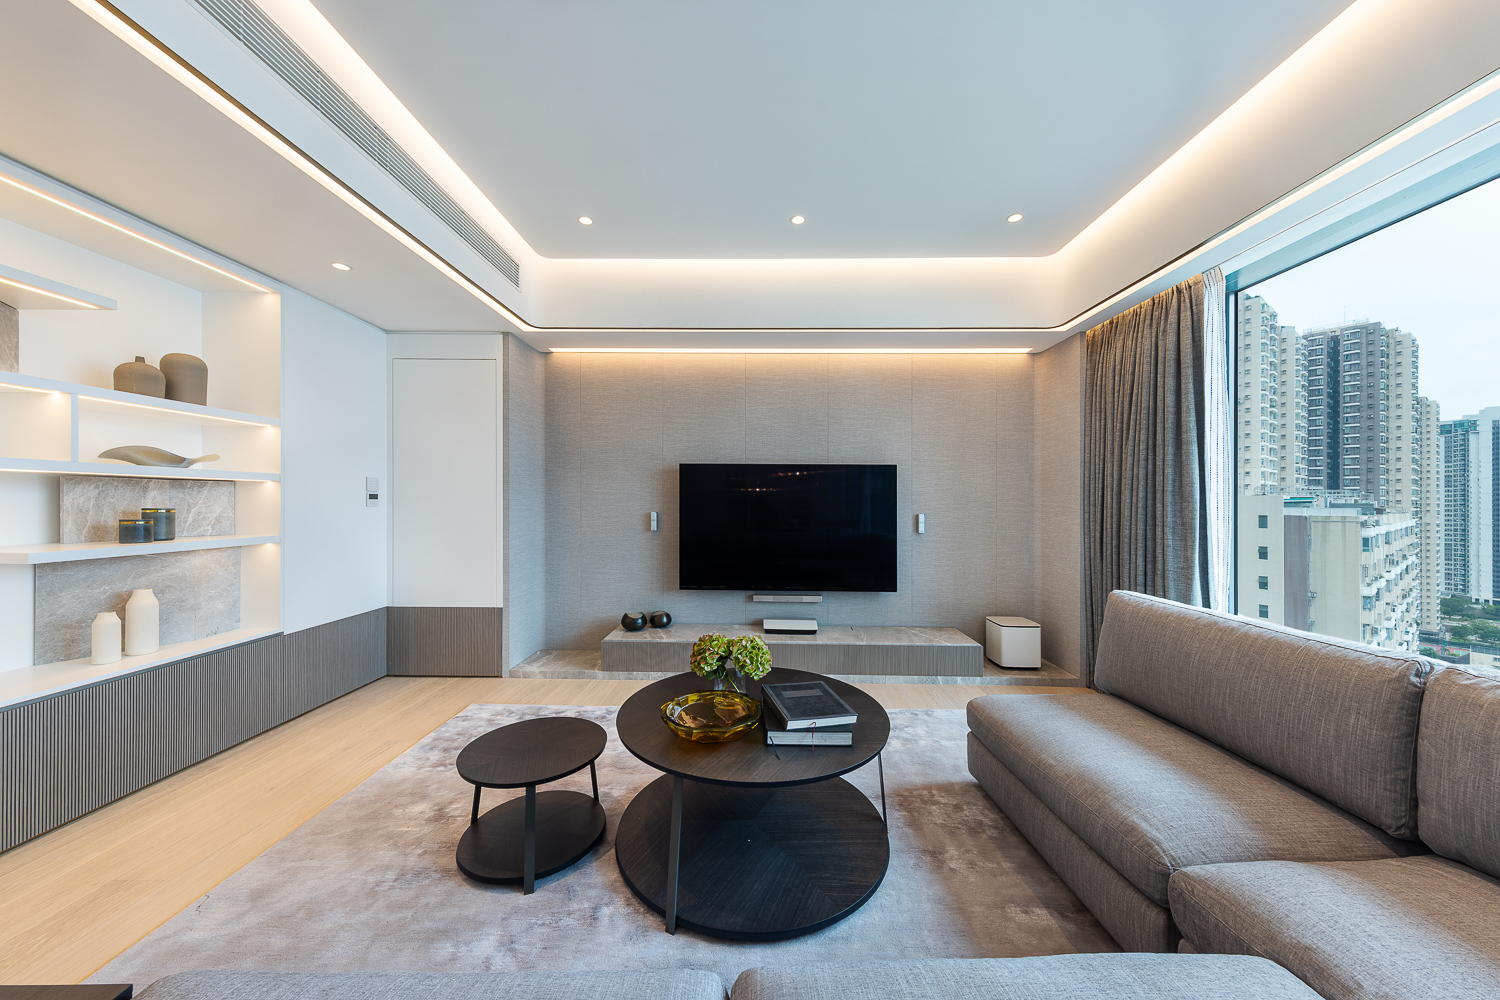 Matthew Li - Grande Interior Design - The Palazzo